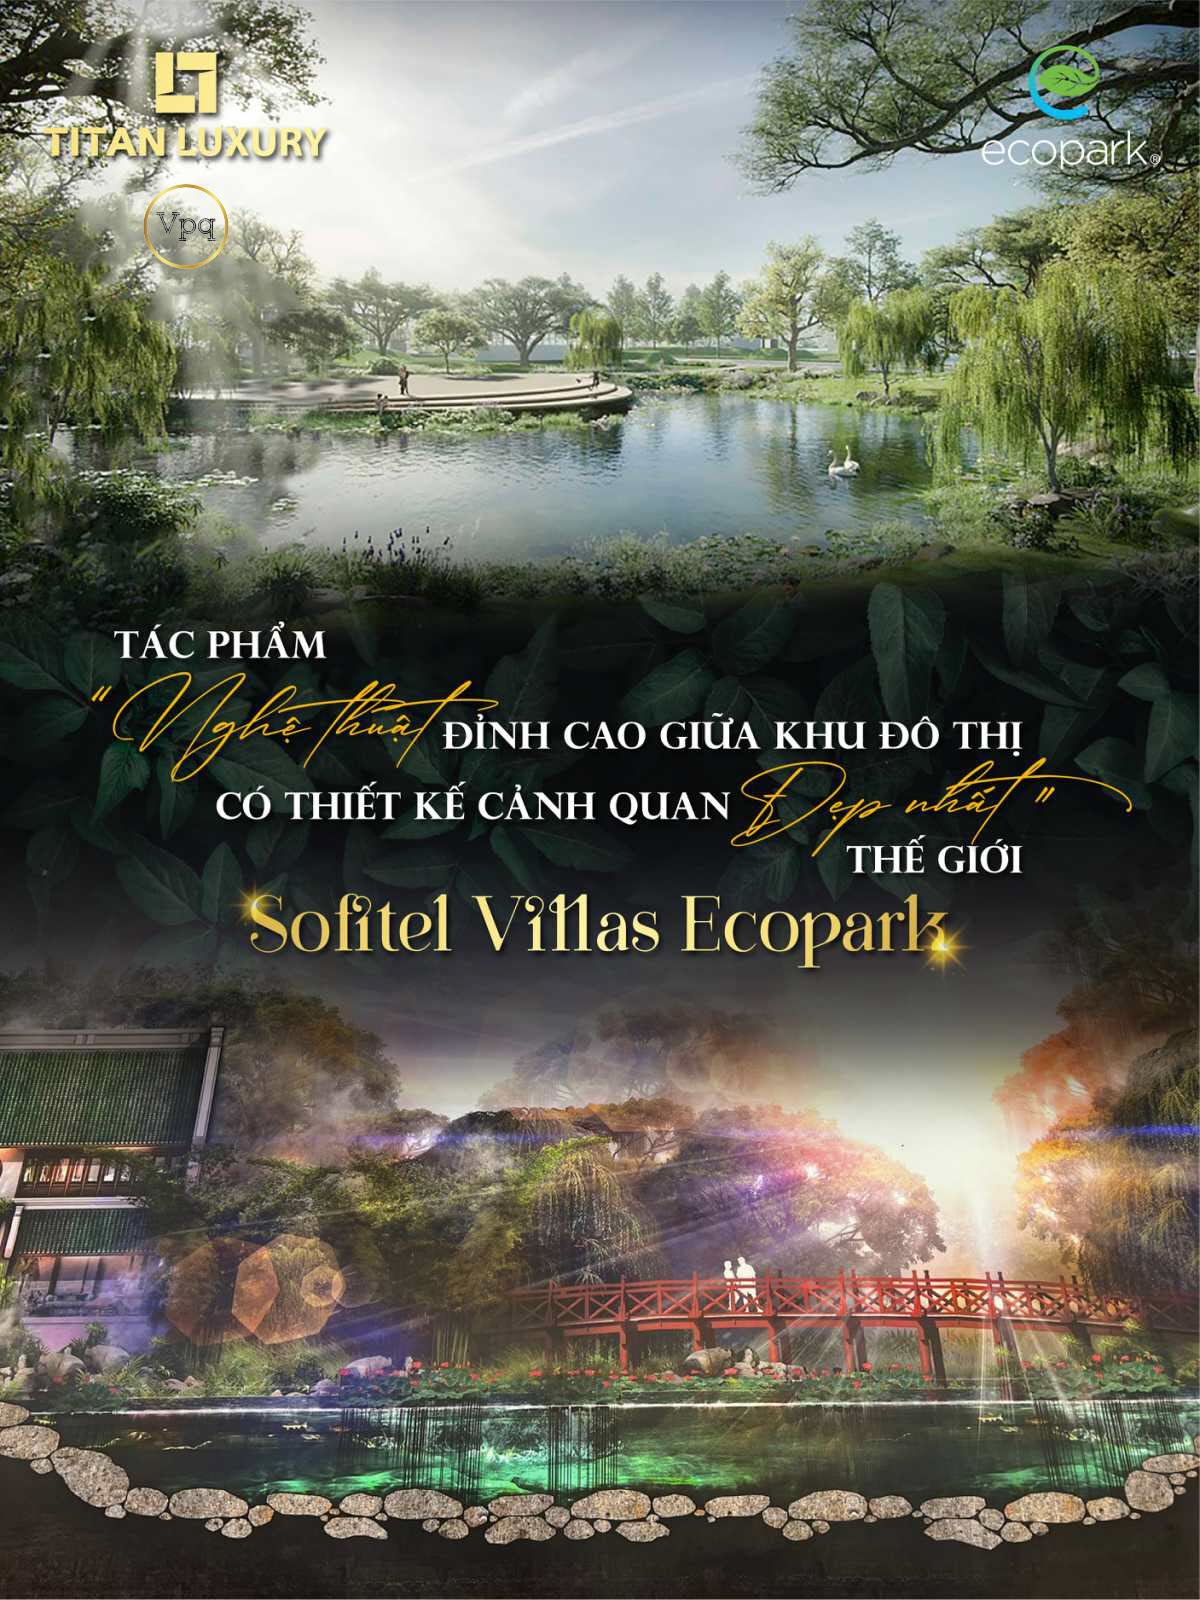 Sofitel Villas Ecopark - một tác phẩm nghệ thuật đỉnh cao giữa khu đô thị triệu cây xanh có thiết kế cảnh quan đẹp nhất thế giới